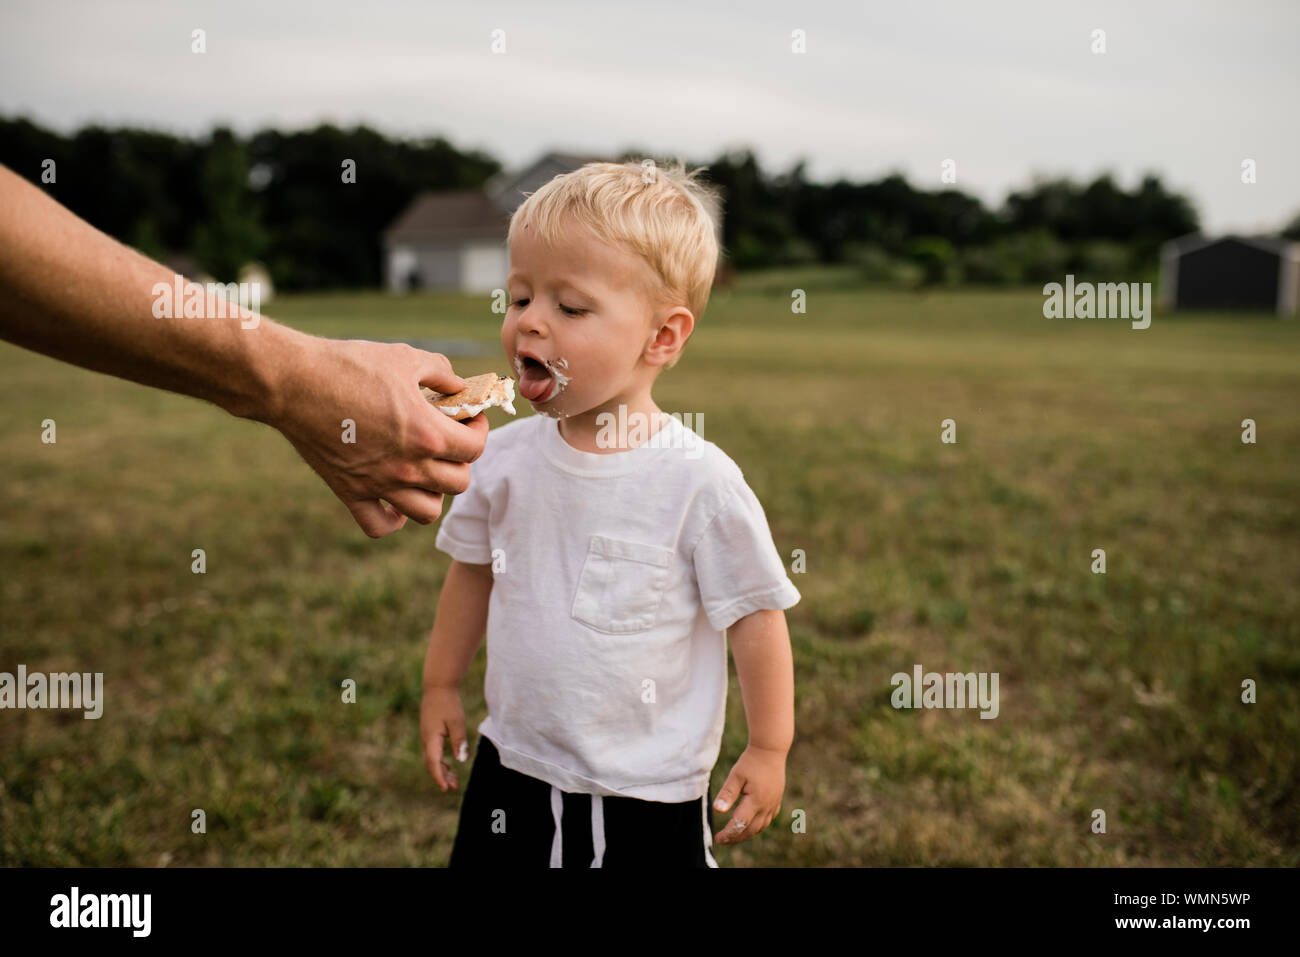 Toddler boy öffnet den Mund zu essen s'More von Dad's Hand im Hinterhof Stockfoto